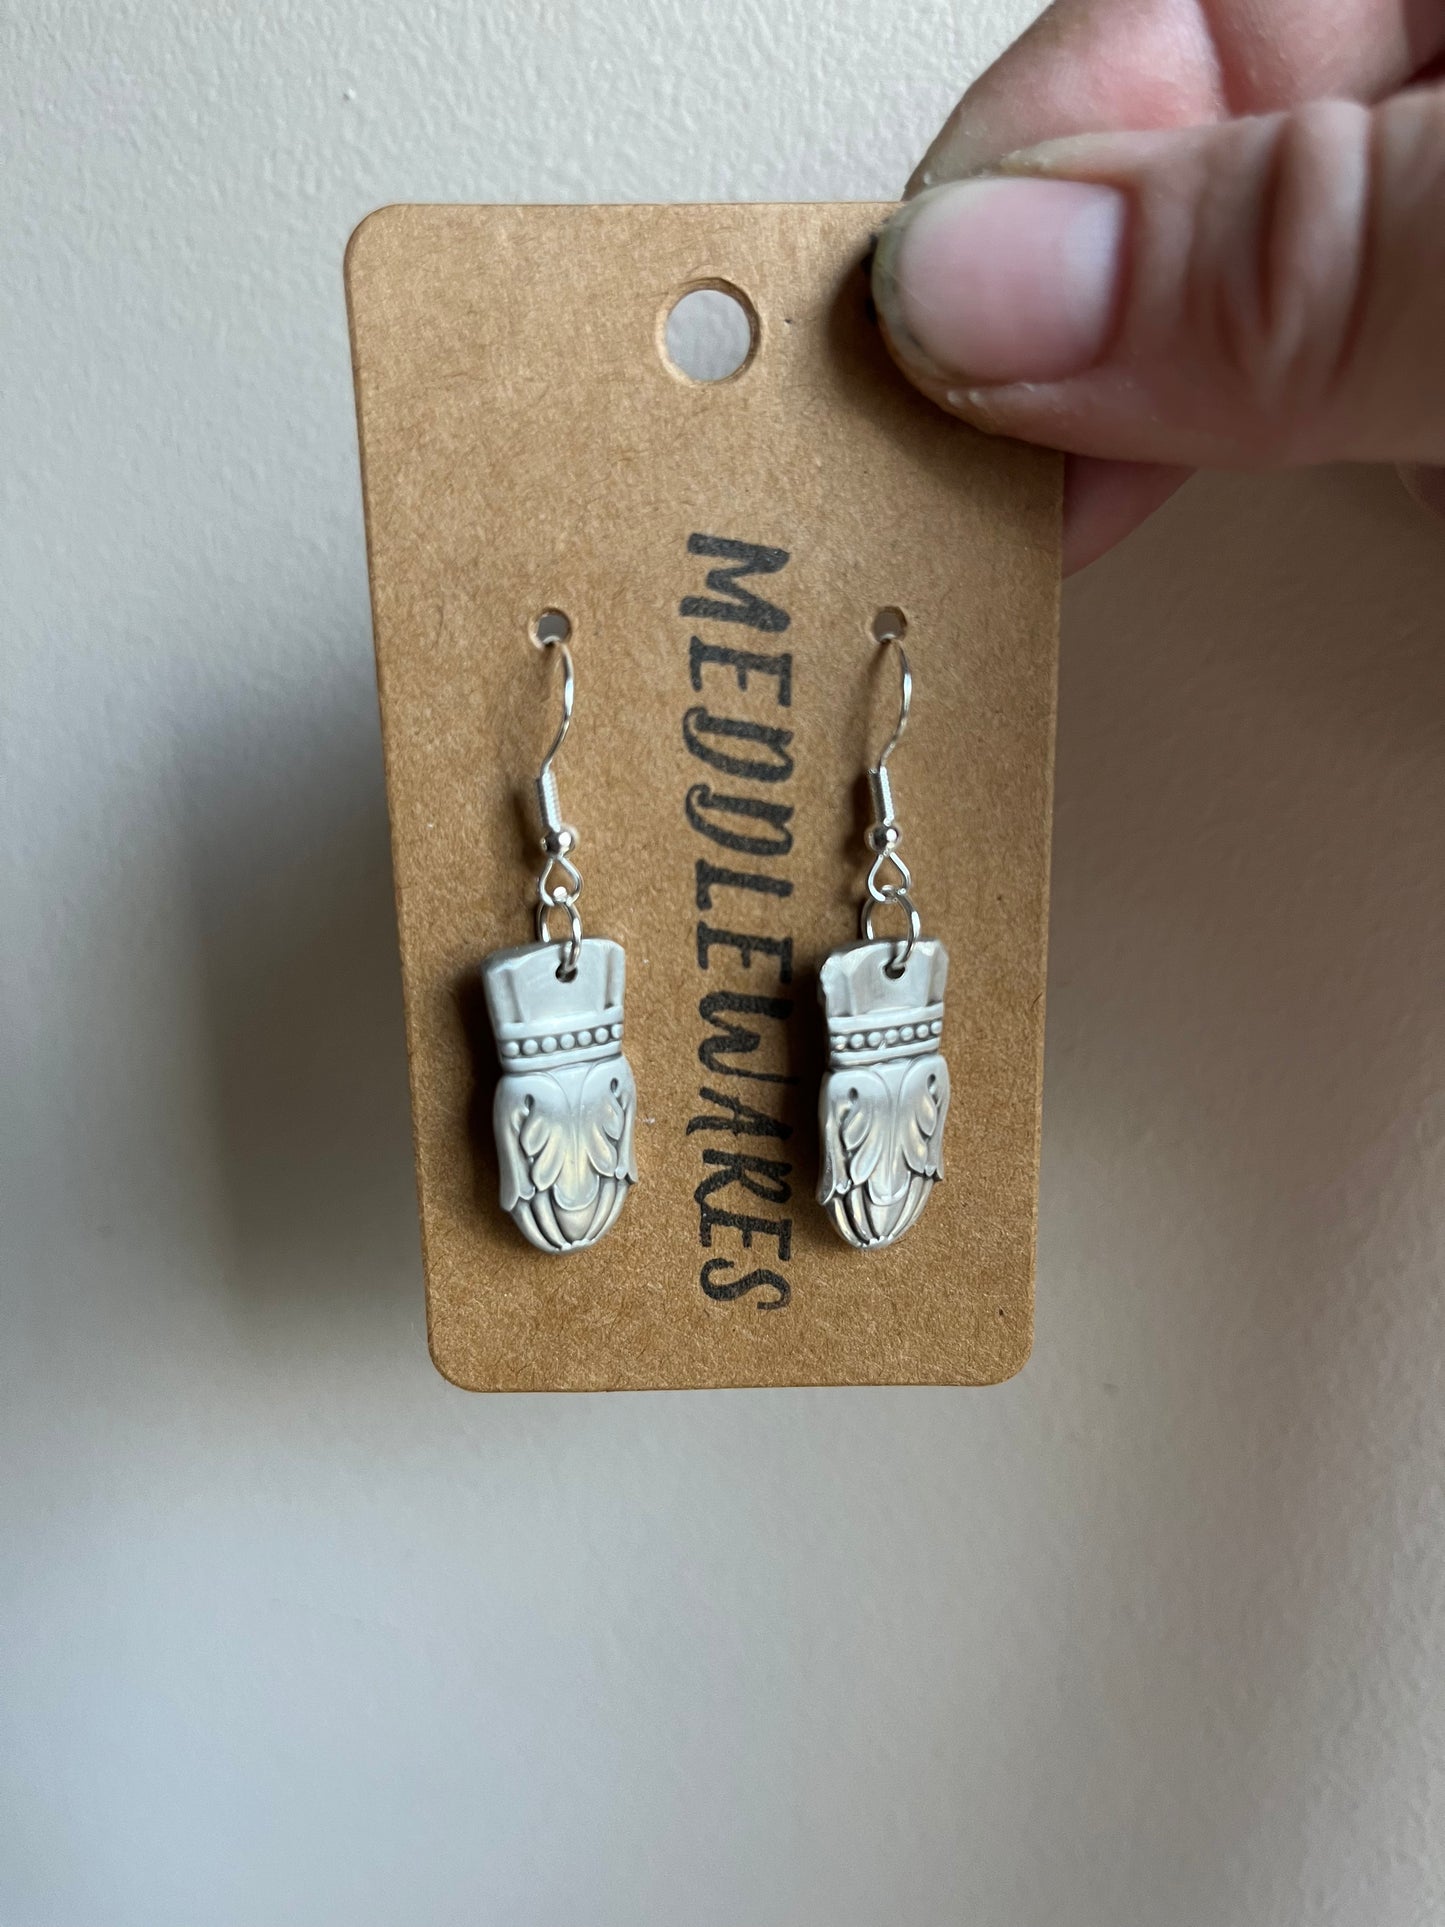 Small flatware earrings